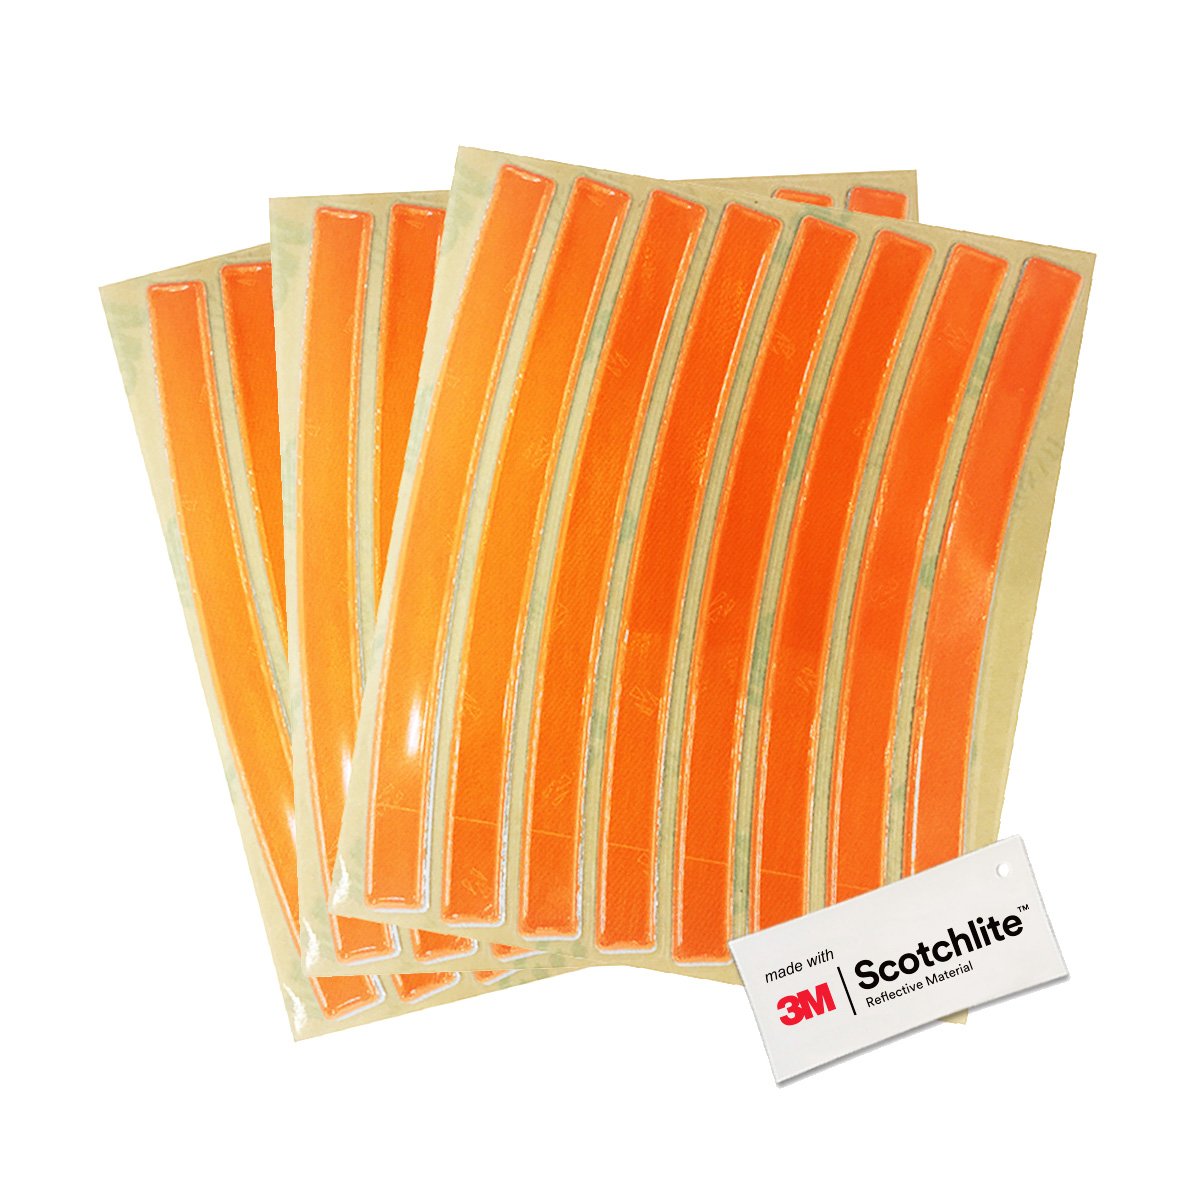 Produktabbildung der orangefarbenen reflektierenden Sticker von Salzmann